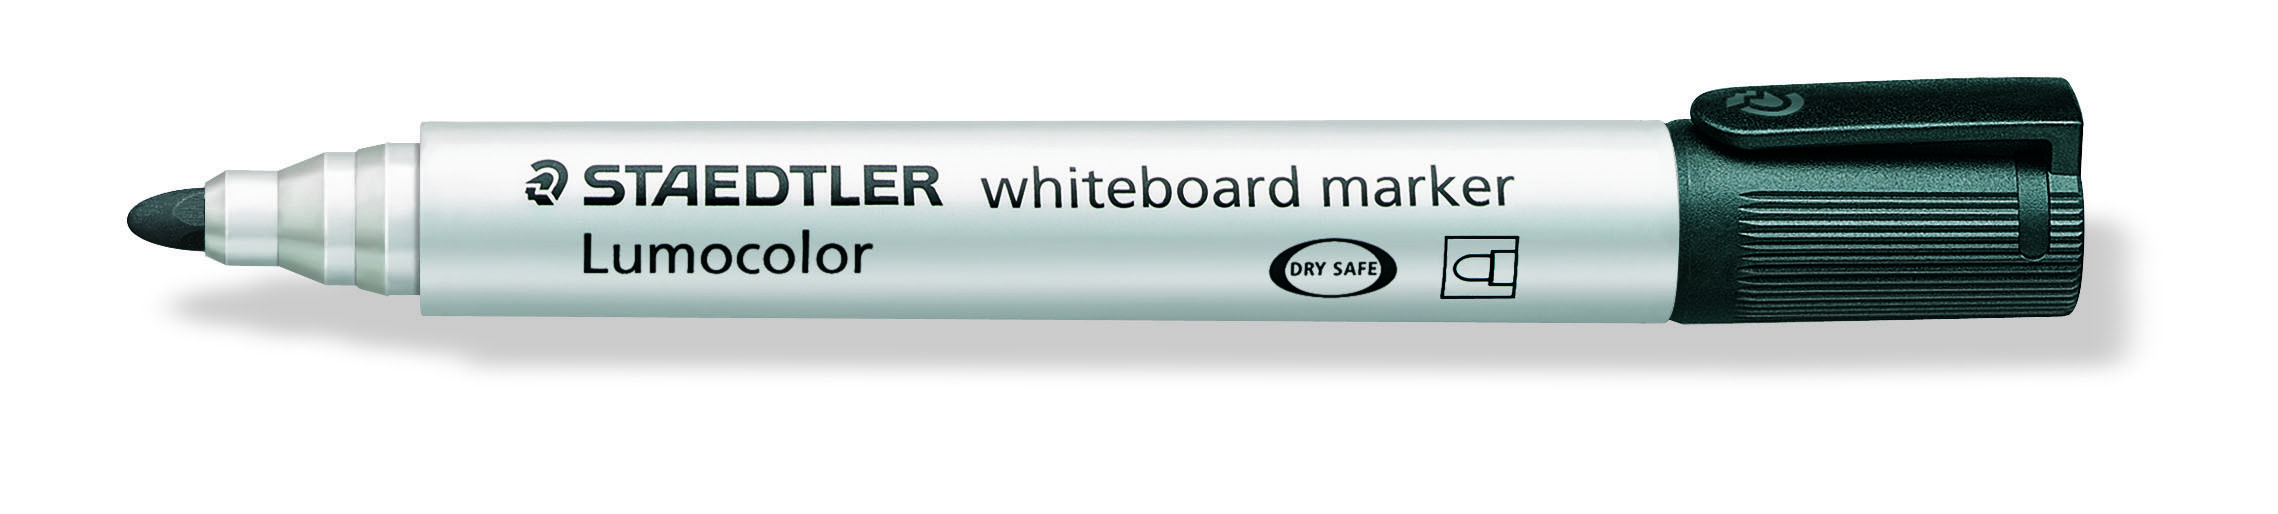 STAEDTLER Whiteboard merkepenn Lumocolor rund 2mm sort